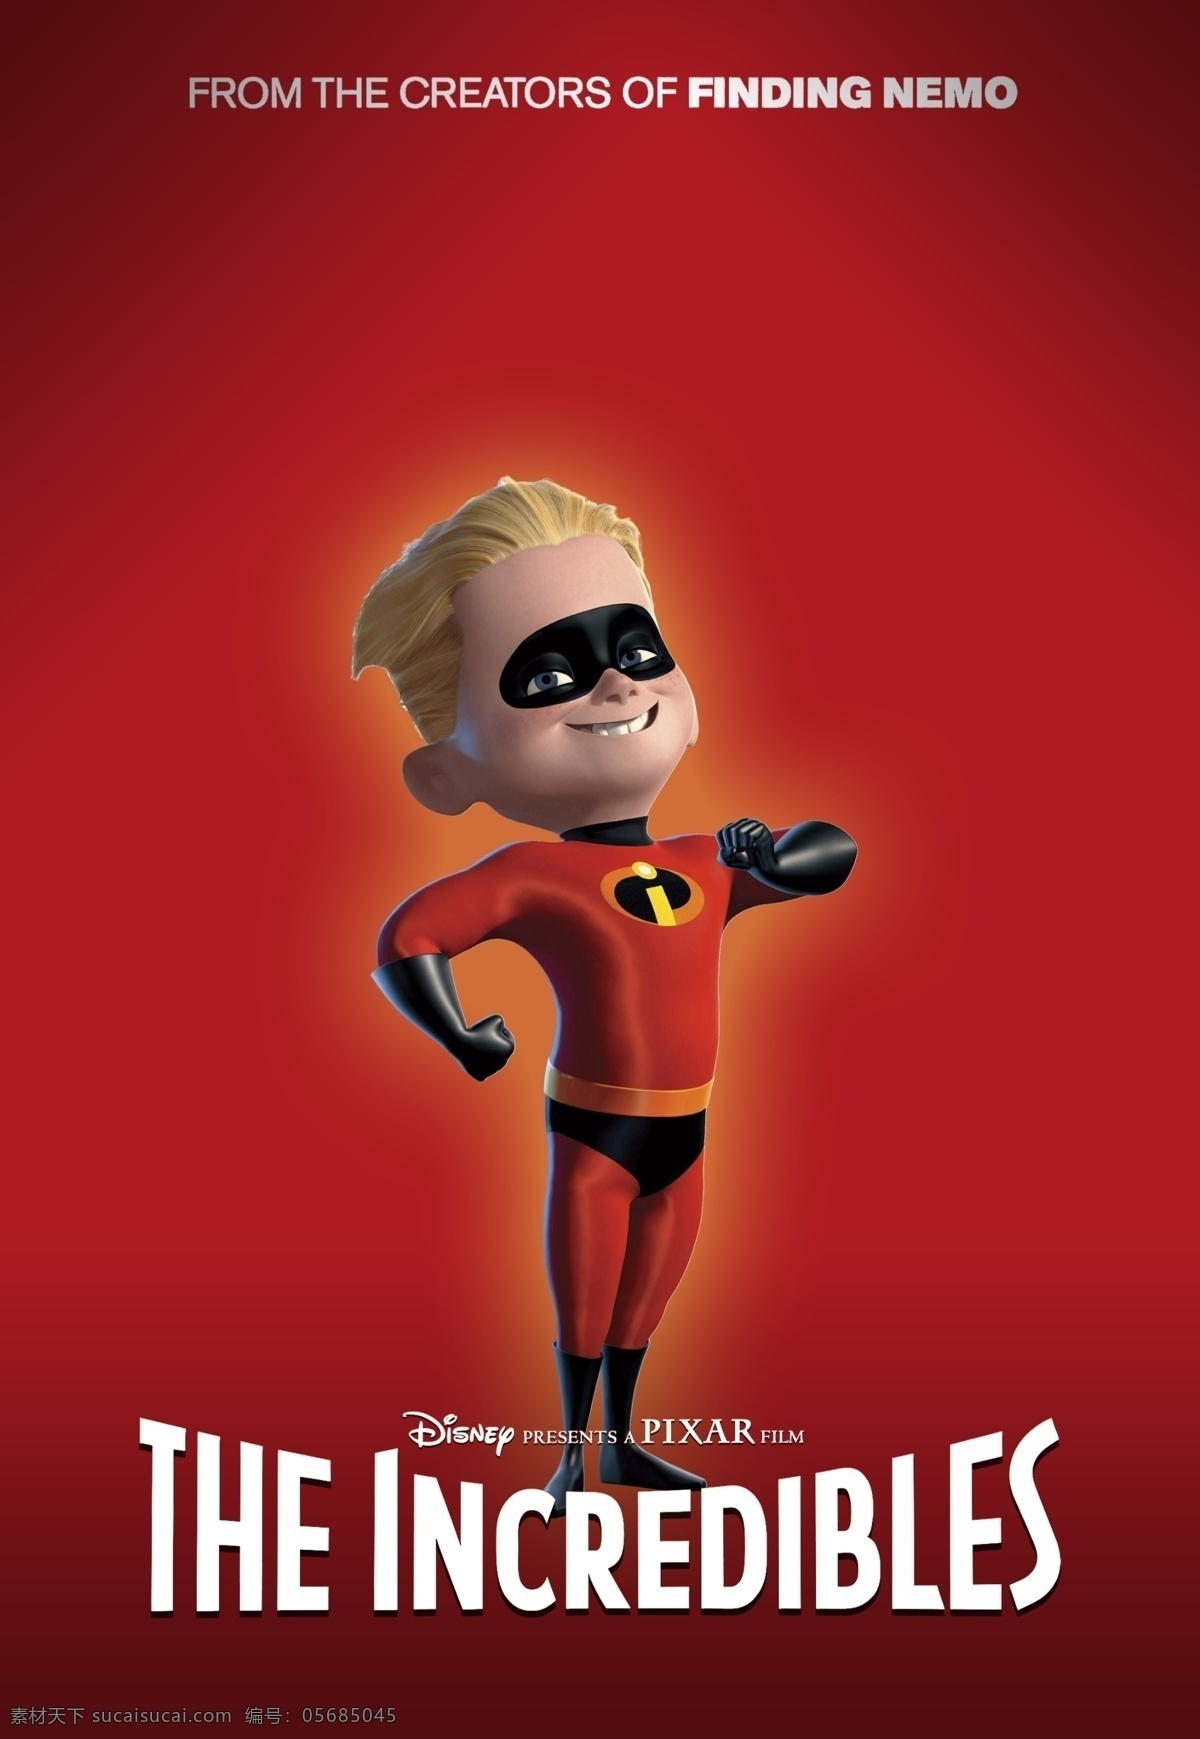 超人总动员 超人特攻队 超人特工 超人家族 动画 皮克斯 电影 电影海报 海报 pixar 动漫动画